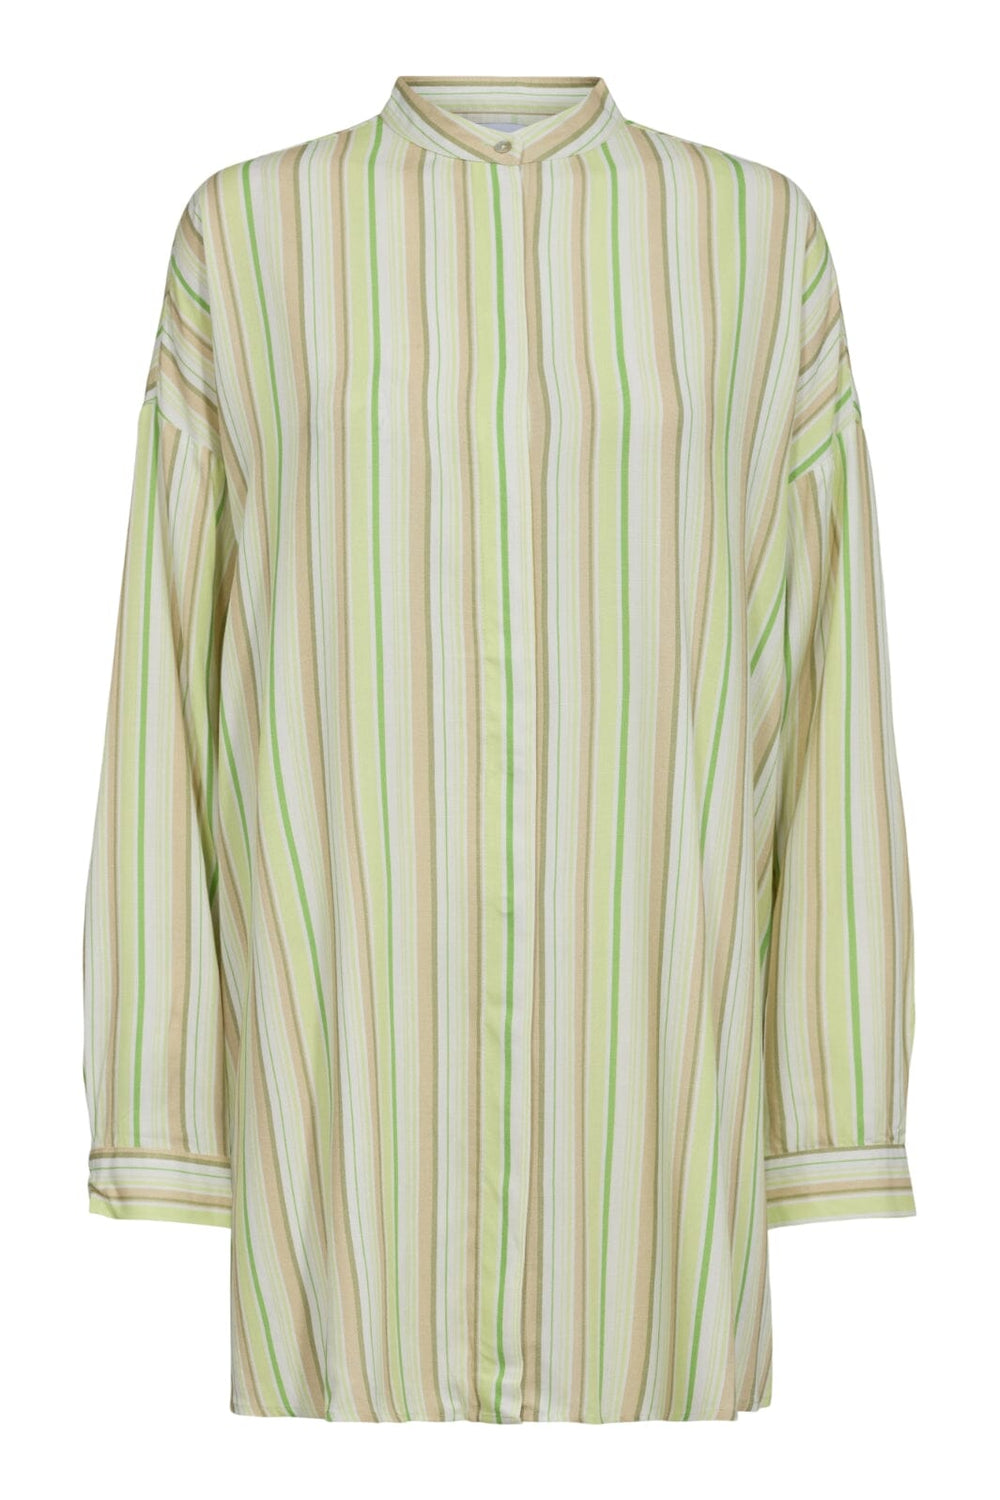 Forudbestilling - Liberte - Spir-Ls-Shirt - Green Sand Stripe (April) Skjorter 